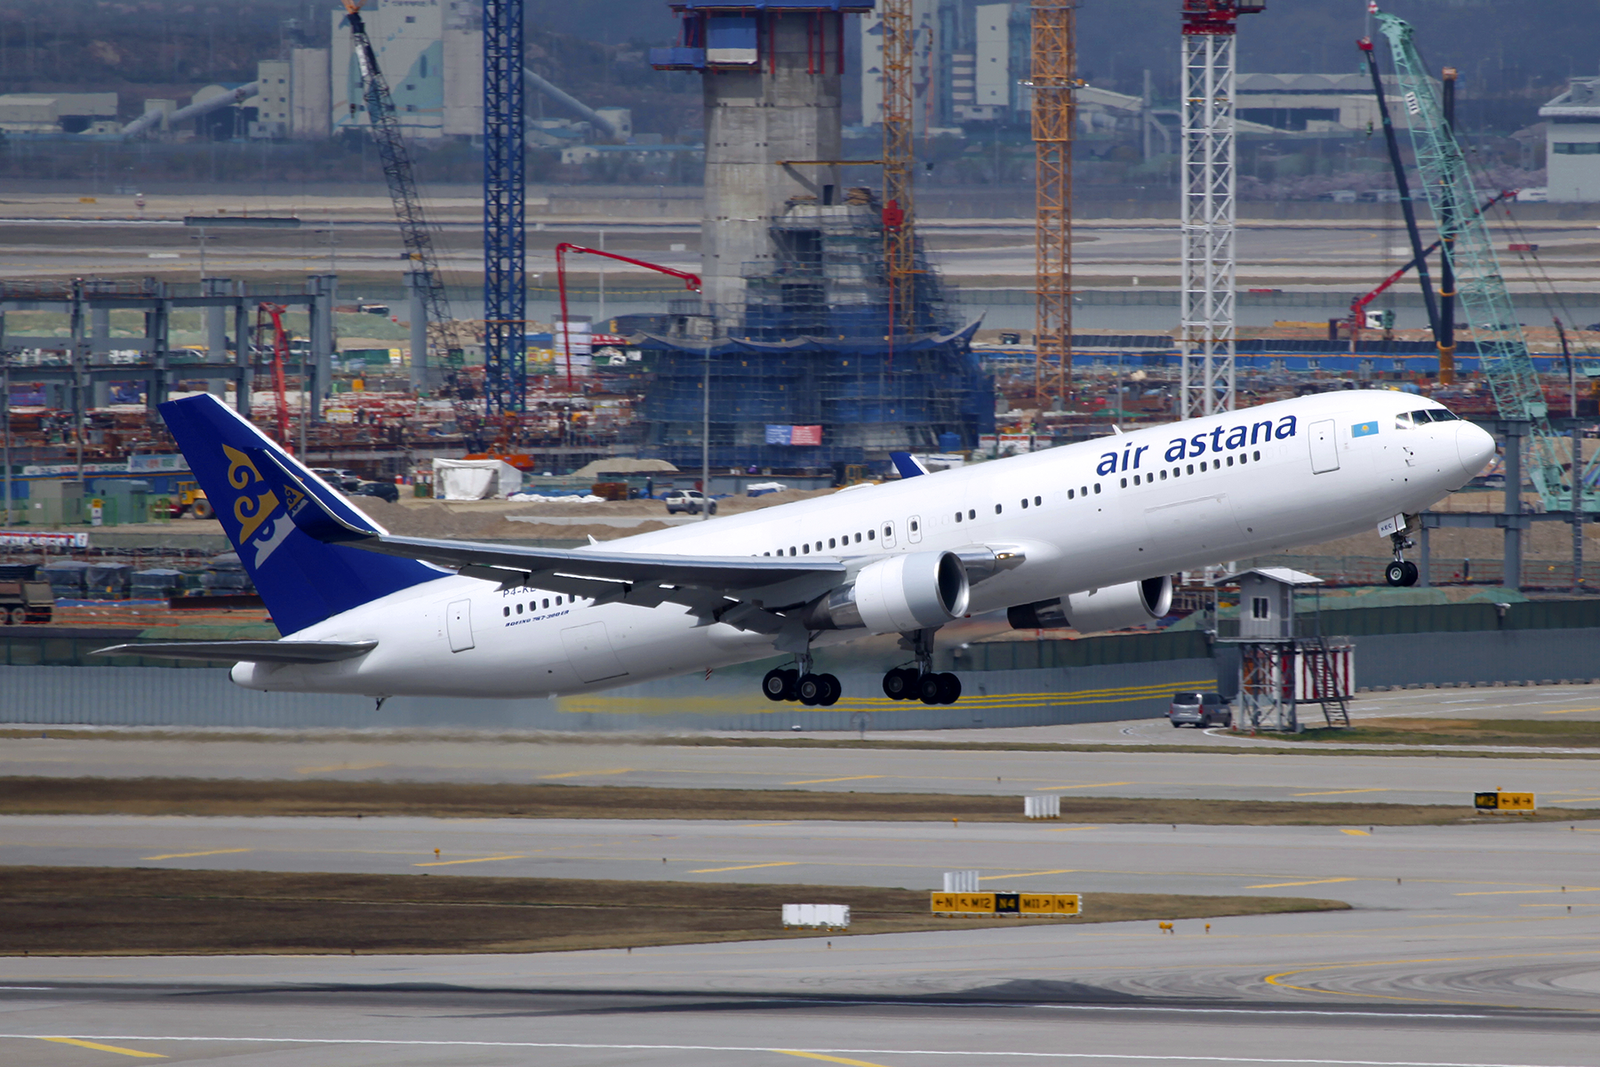 El último Boeing 767-300ER de pasajeros fabricado es el actual EI-KEC de Air Astana. Foto: byeangel